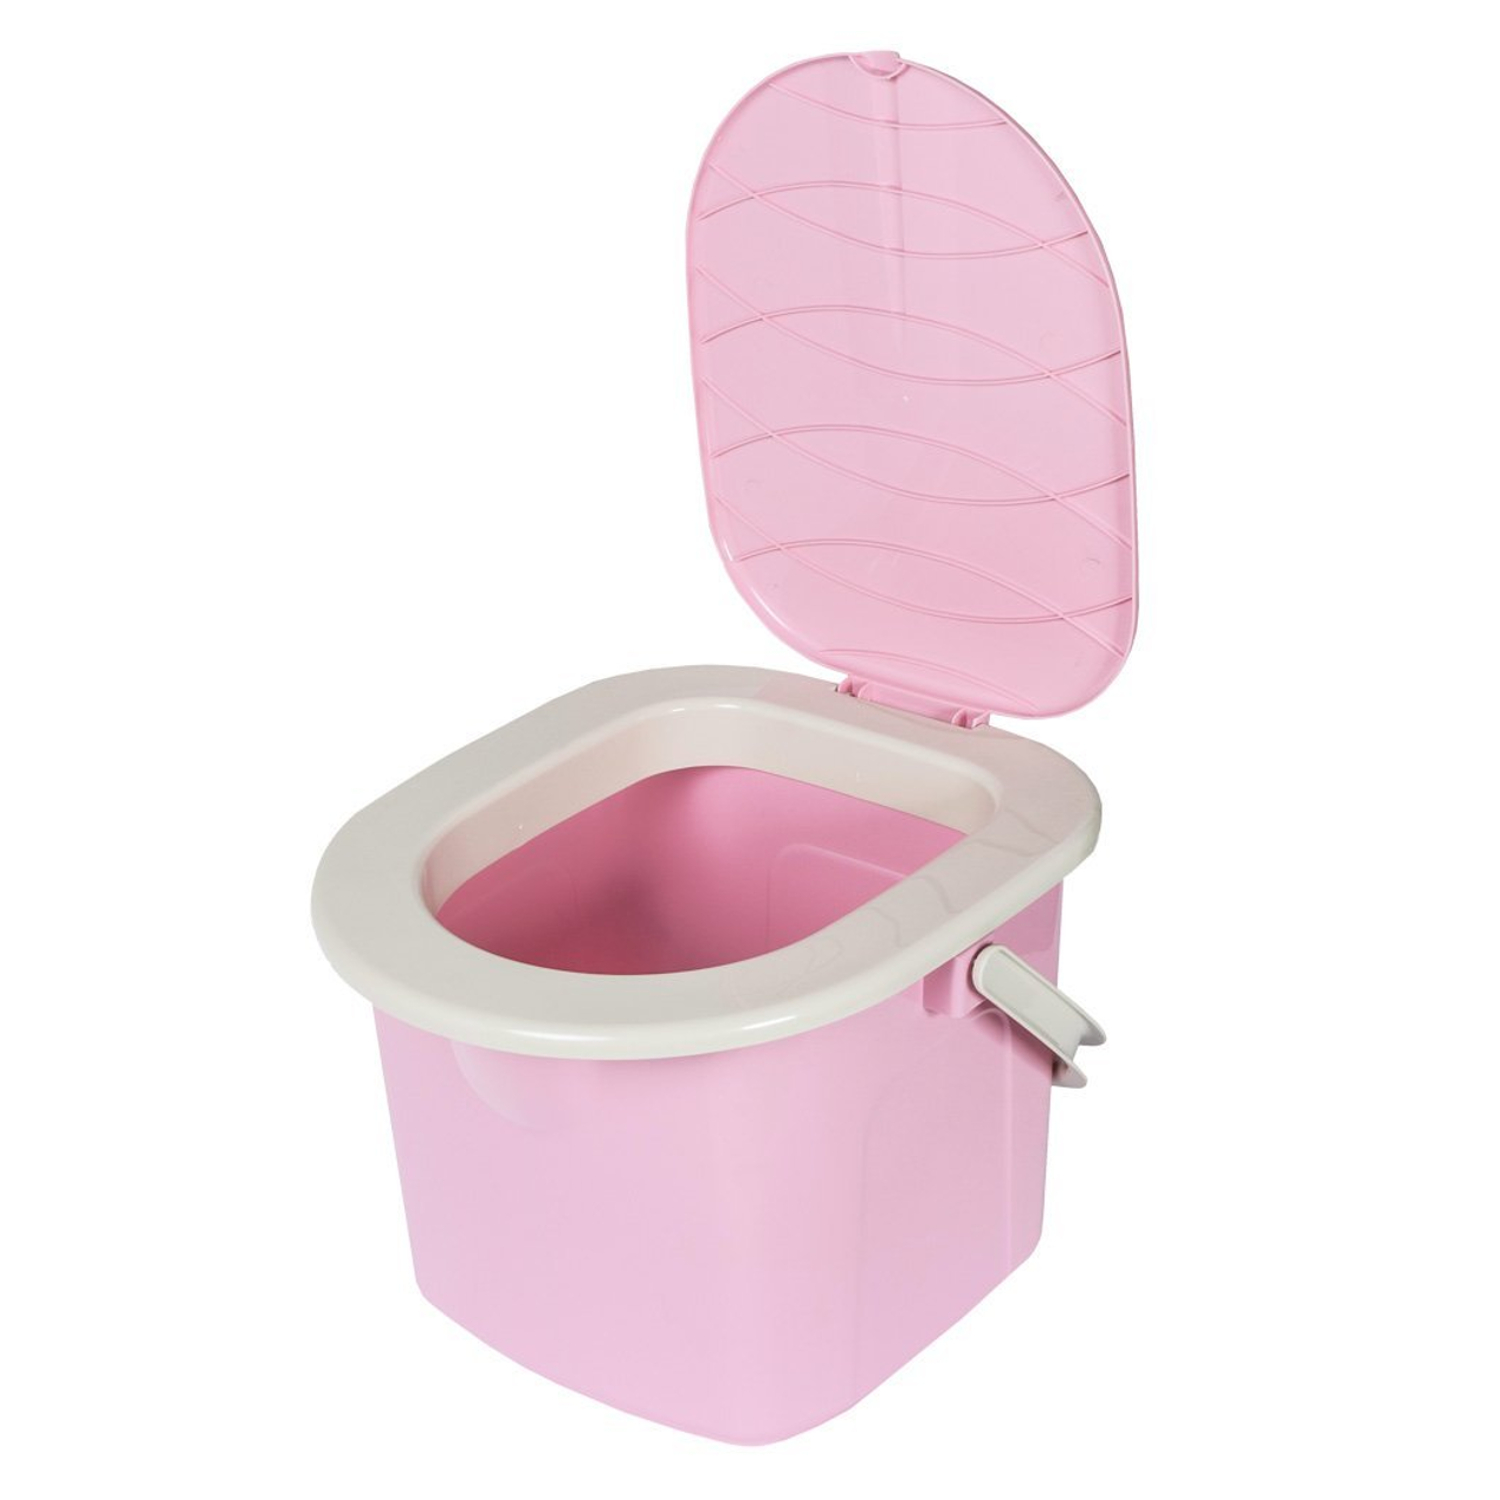 HAGO® Campingtoilette Reiseklo mobiles WC Klo Toilette grau mit Eimer und Deckel 